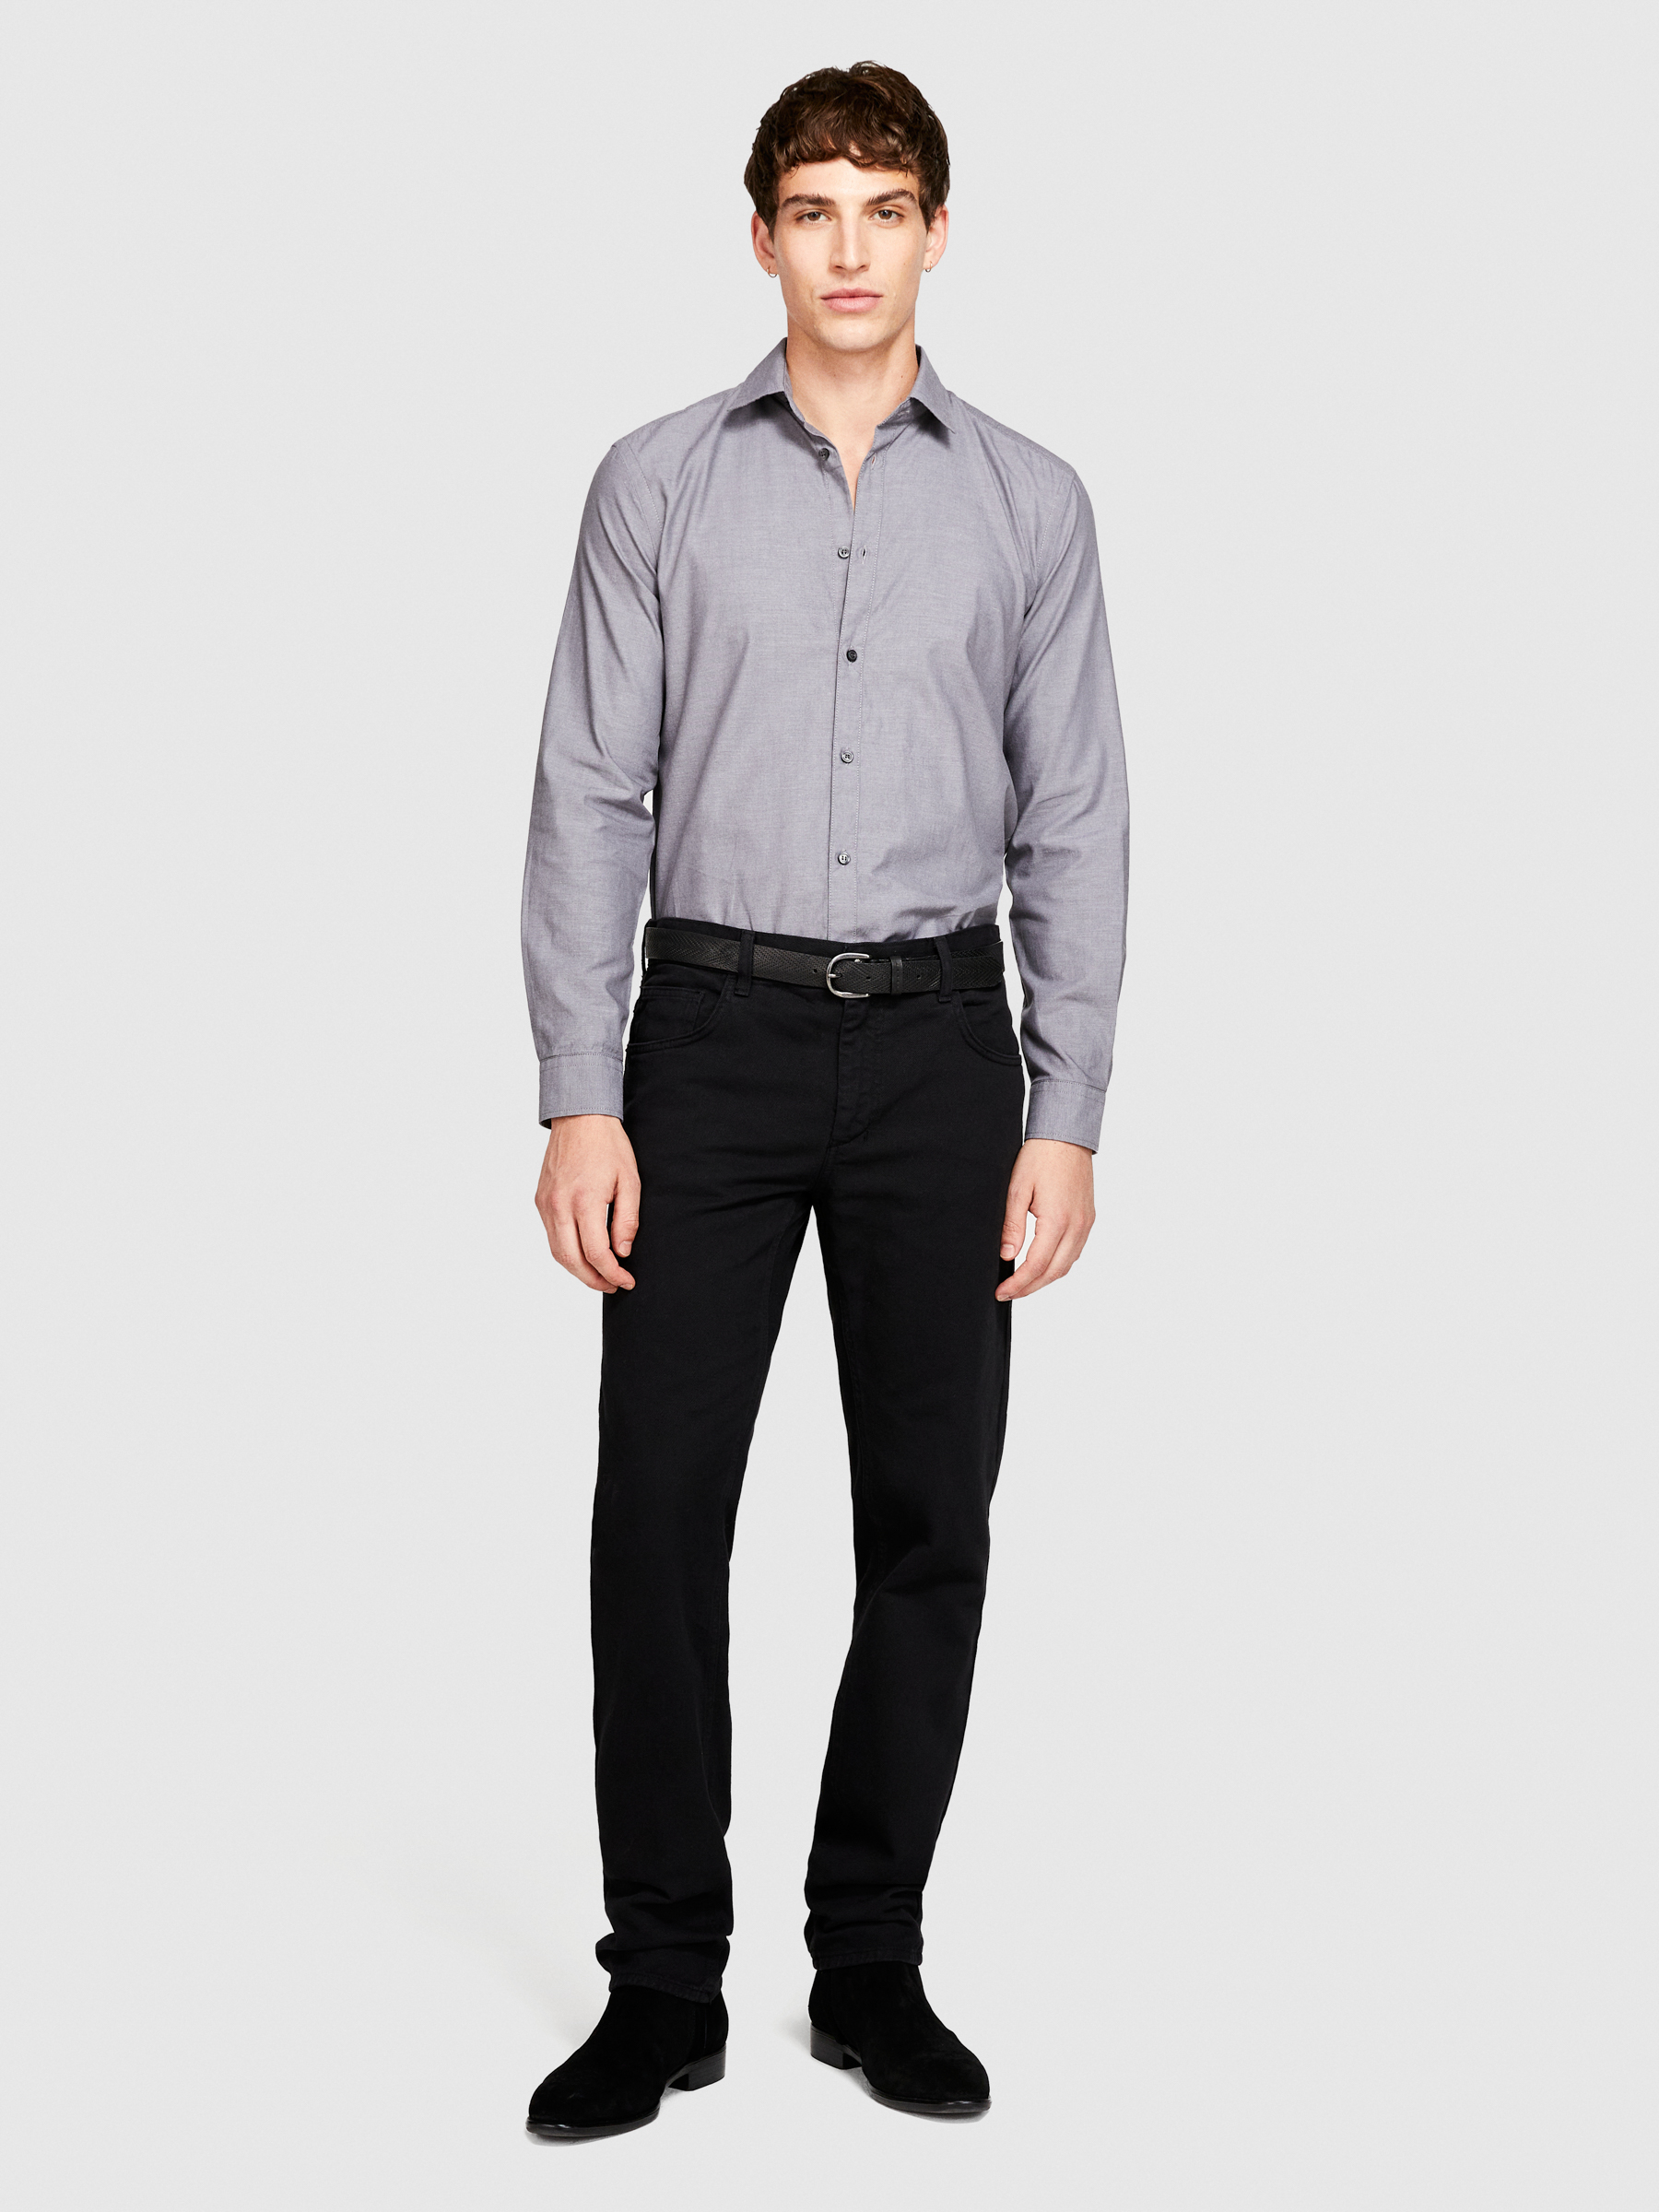 Sisley - 100% Cotton Shirt, Man, Gray, Size: 46